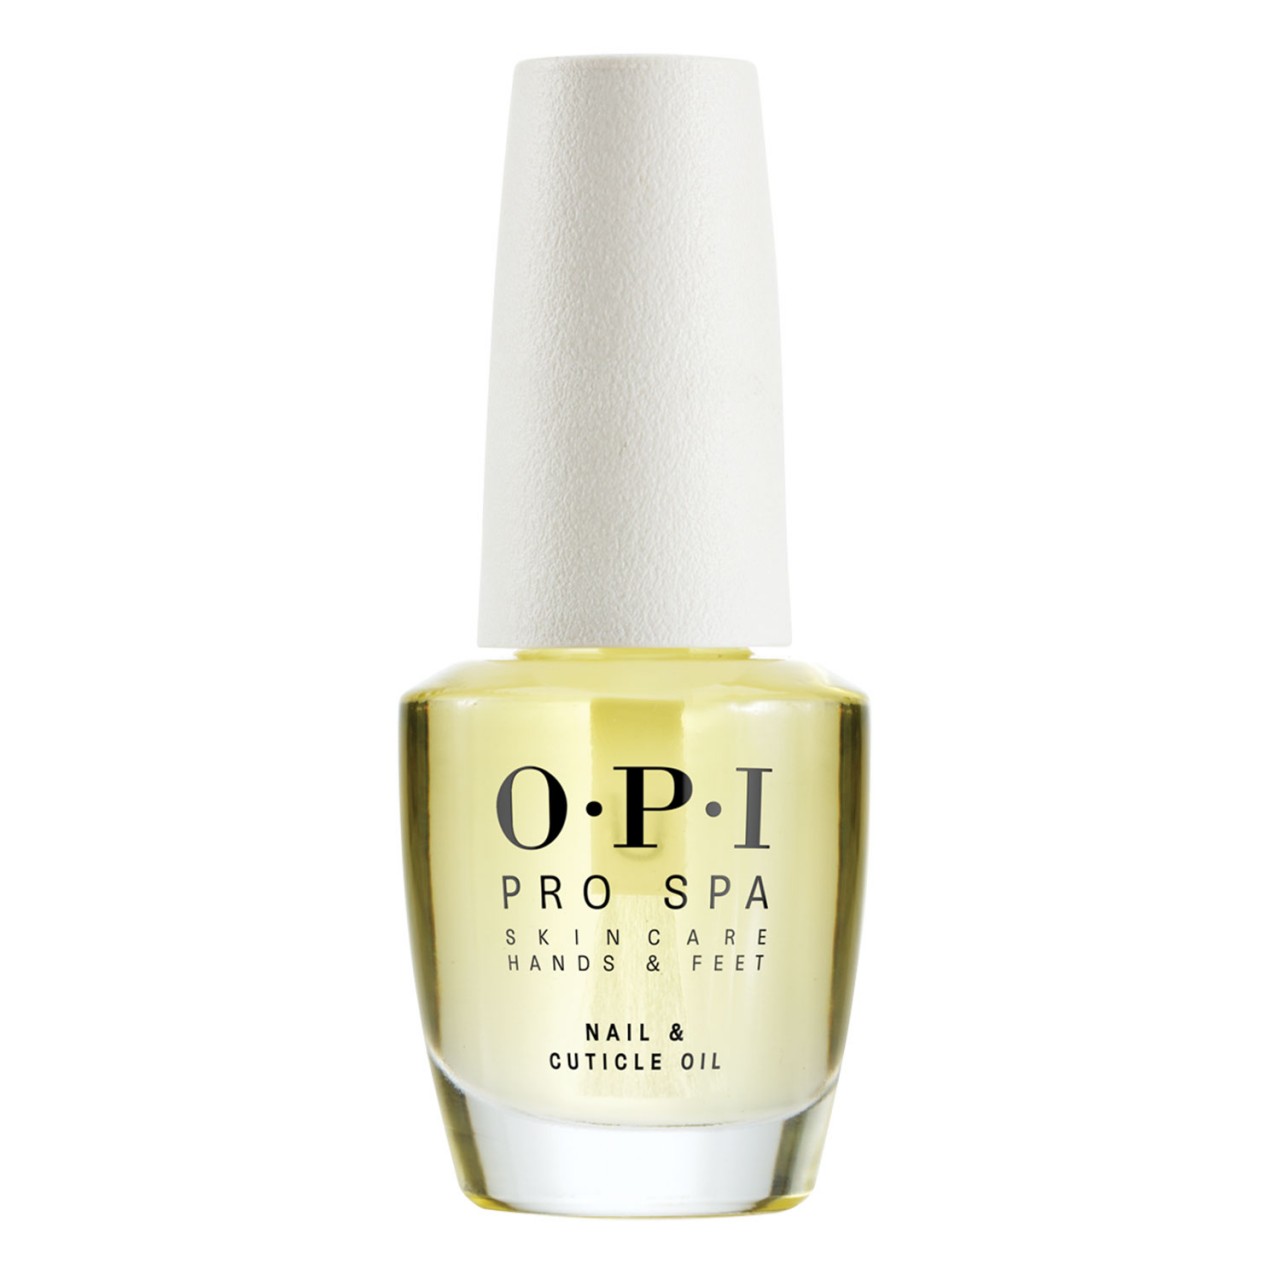 Pro Spa - Nail & Cuticle Oil von OPI